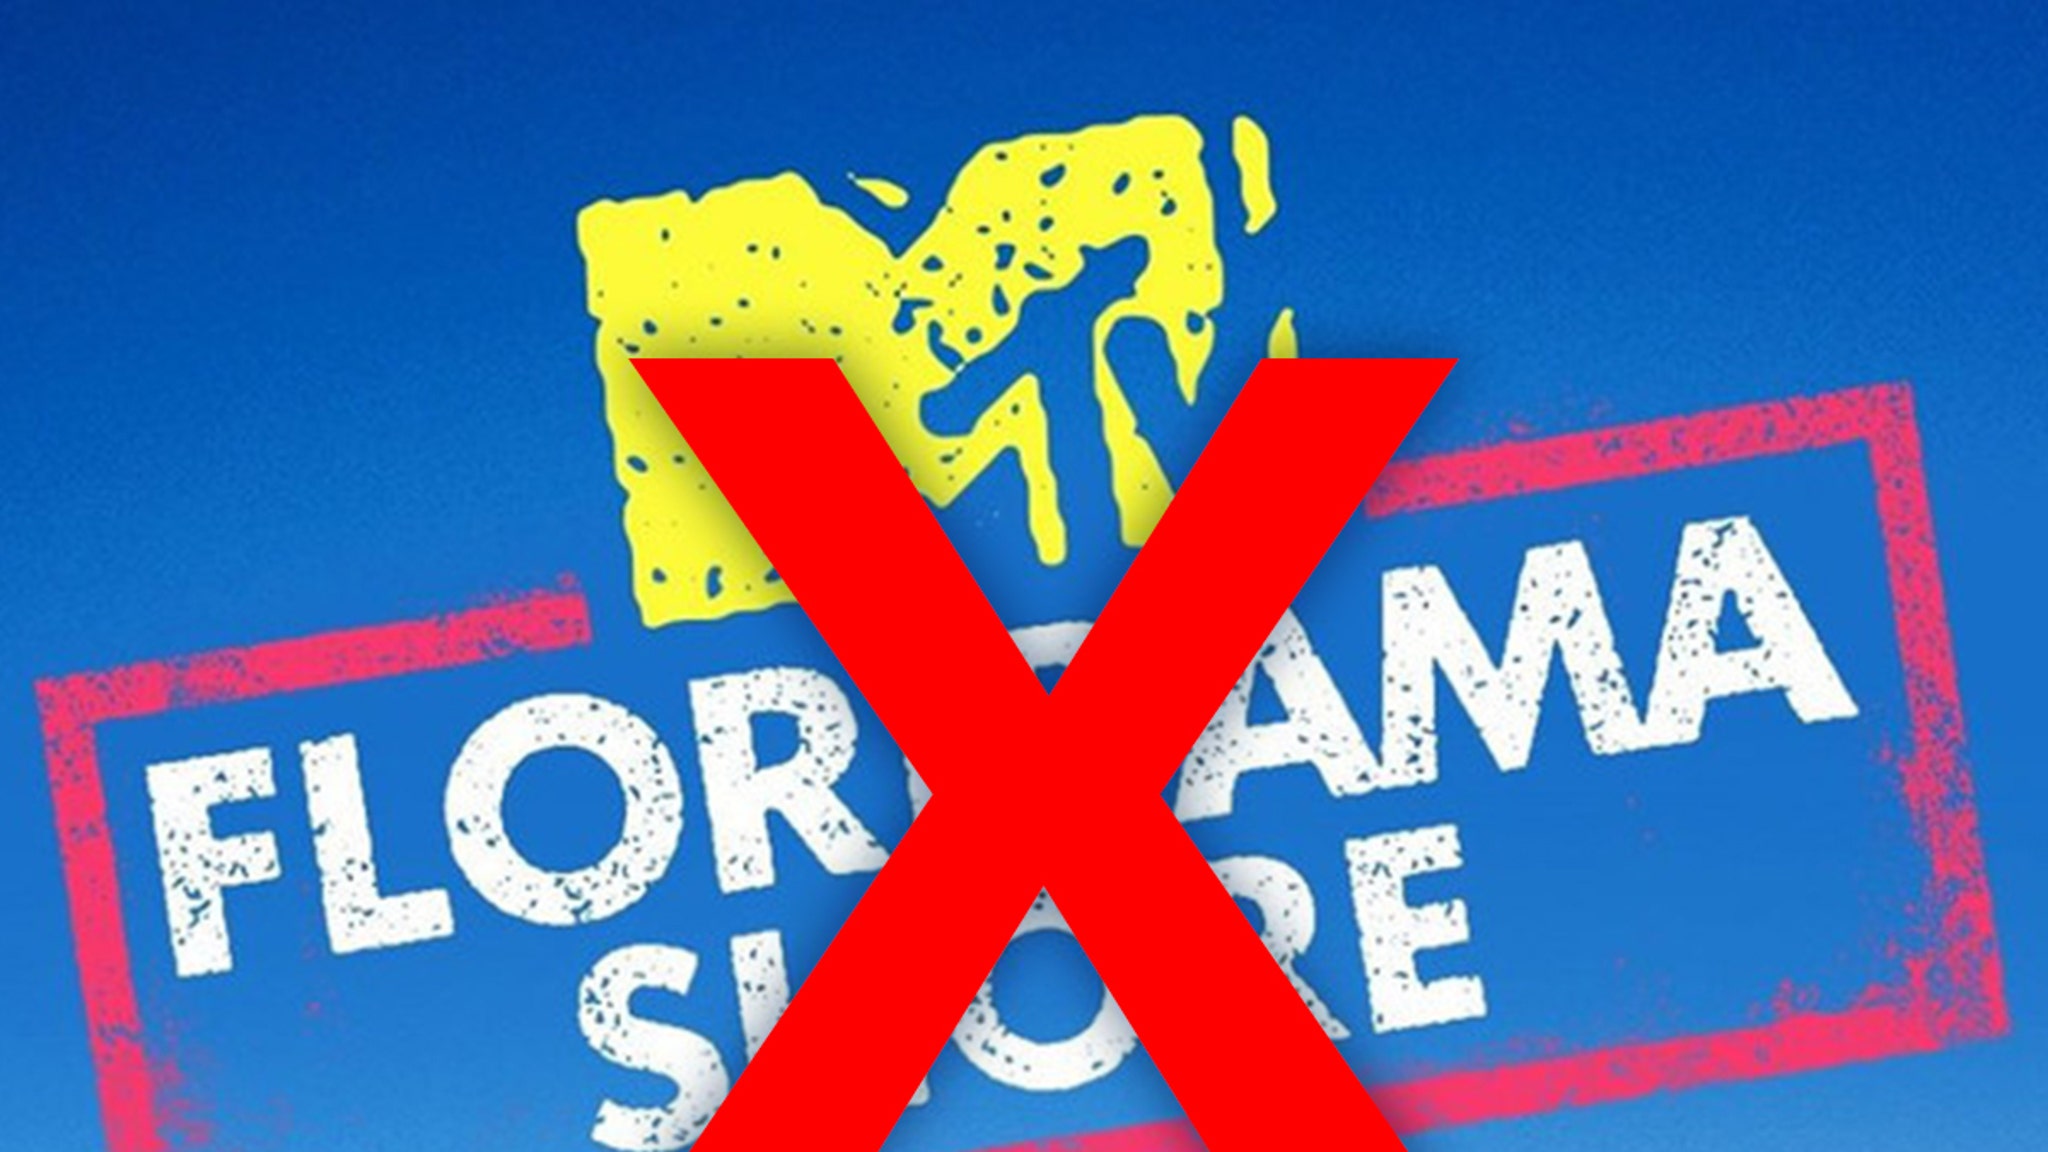 MTV's 'Floribama Shore' Canceled